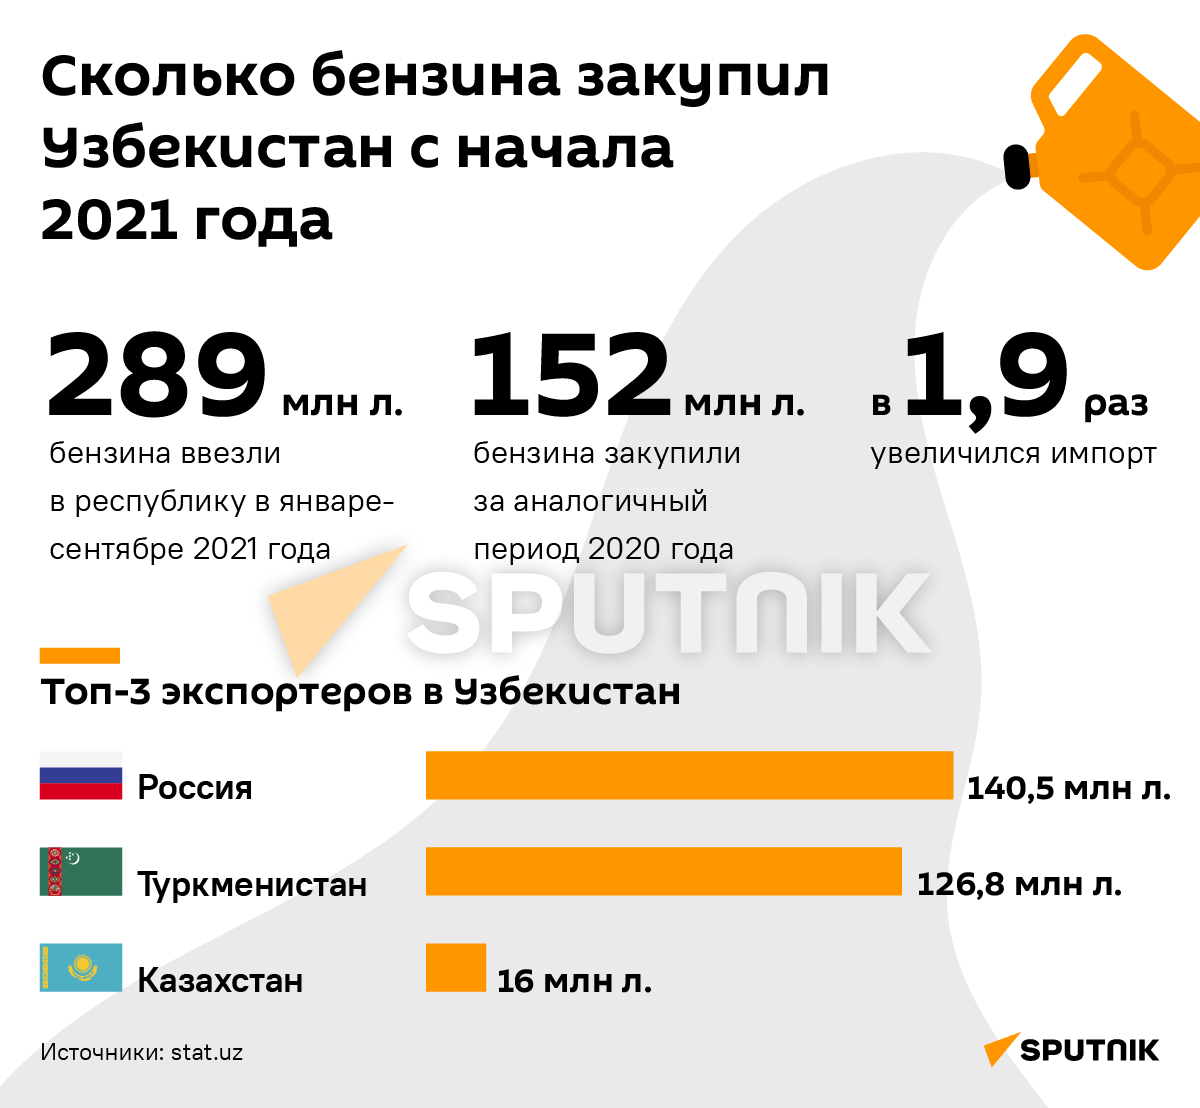 Сколько бензина закупил Узбекистан с начала 2021 года деск - Sputnik Узбекистан